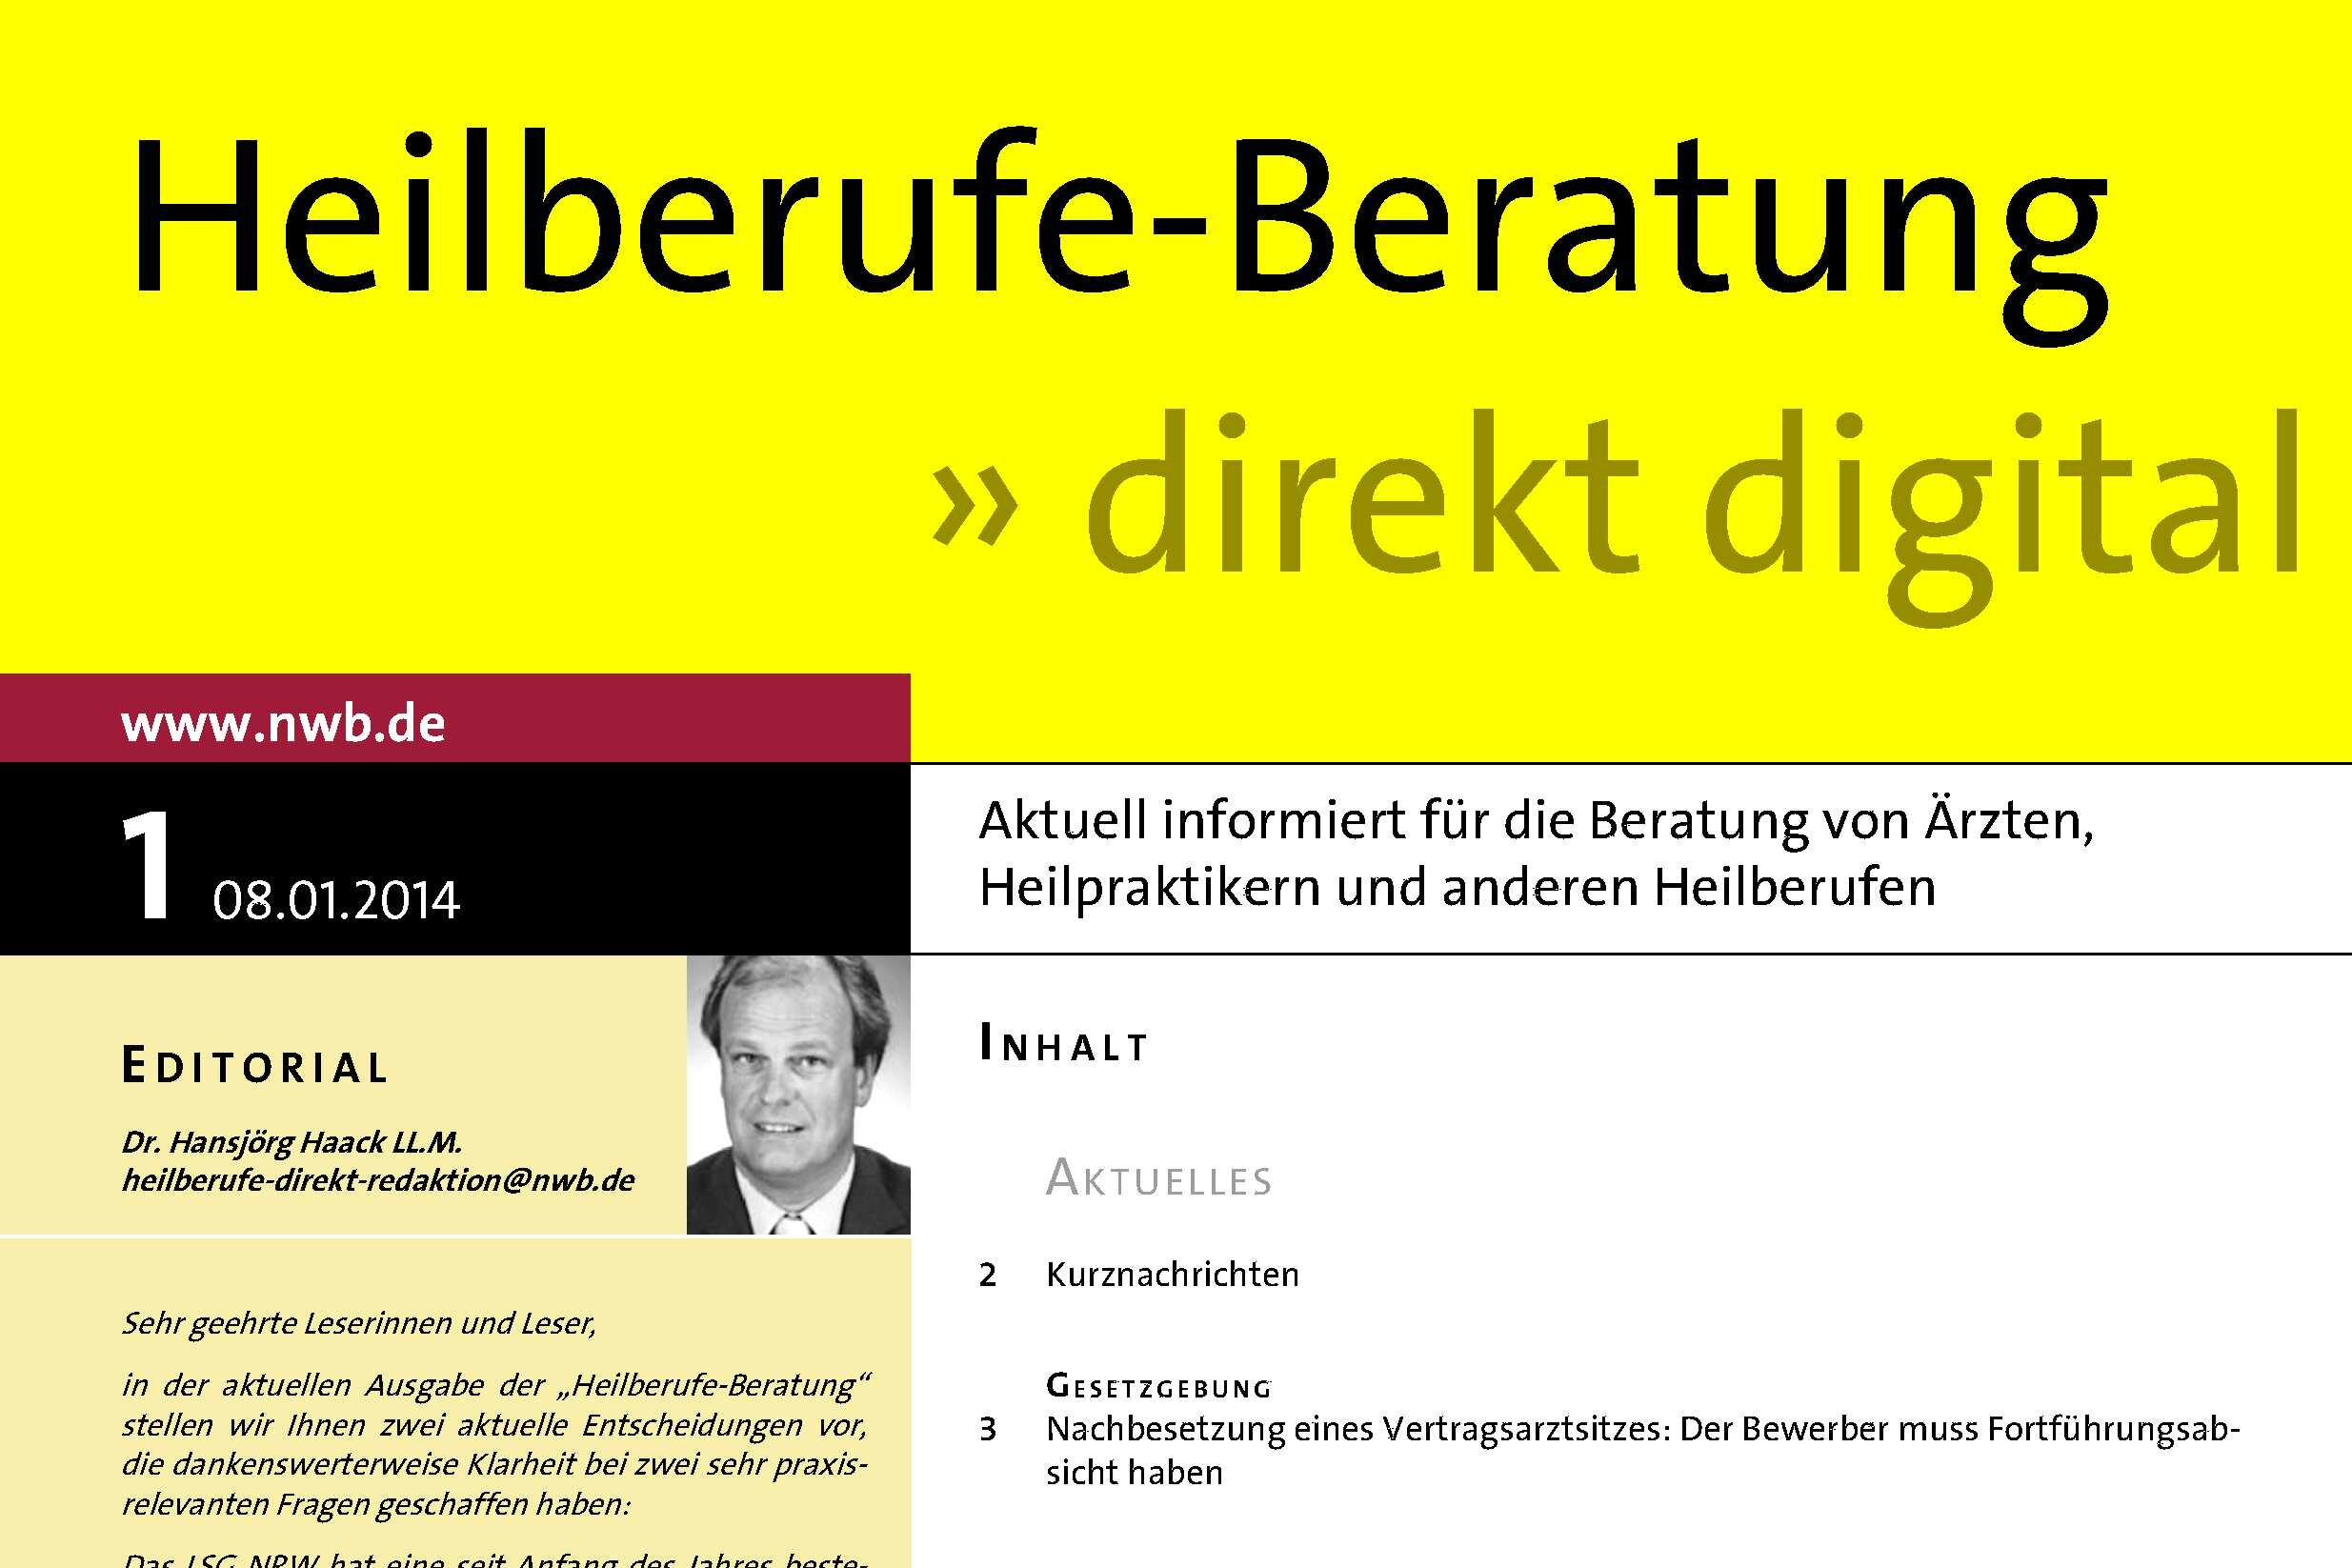 Erschienen in "Heilberufe-Beratung direkt digital" NR. 1/2014